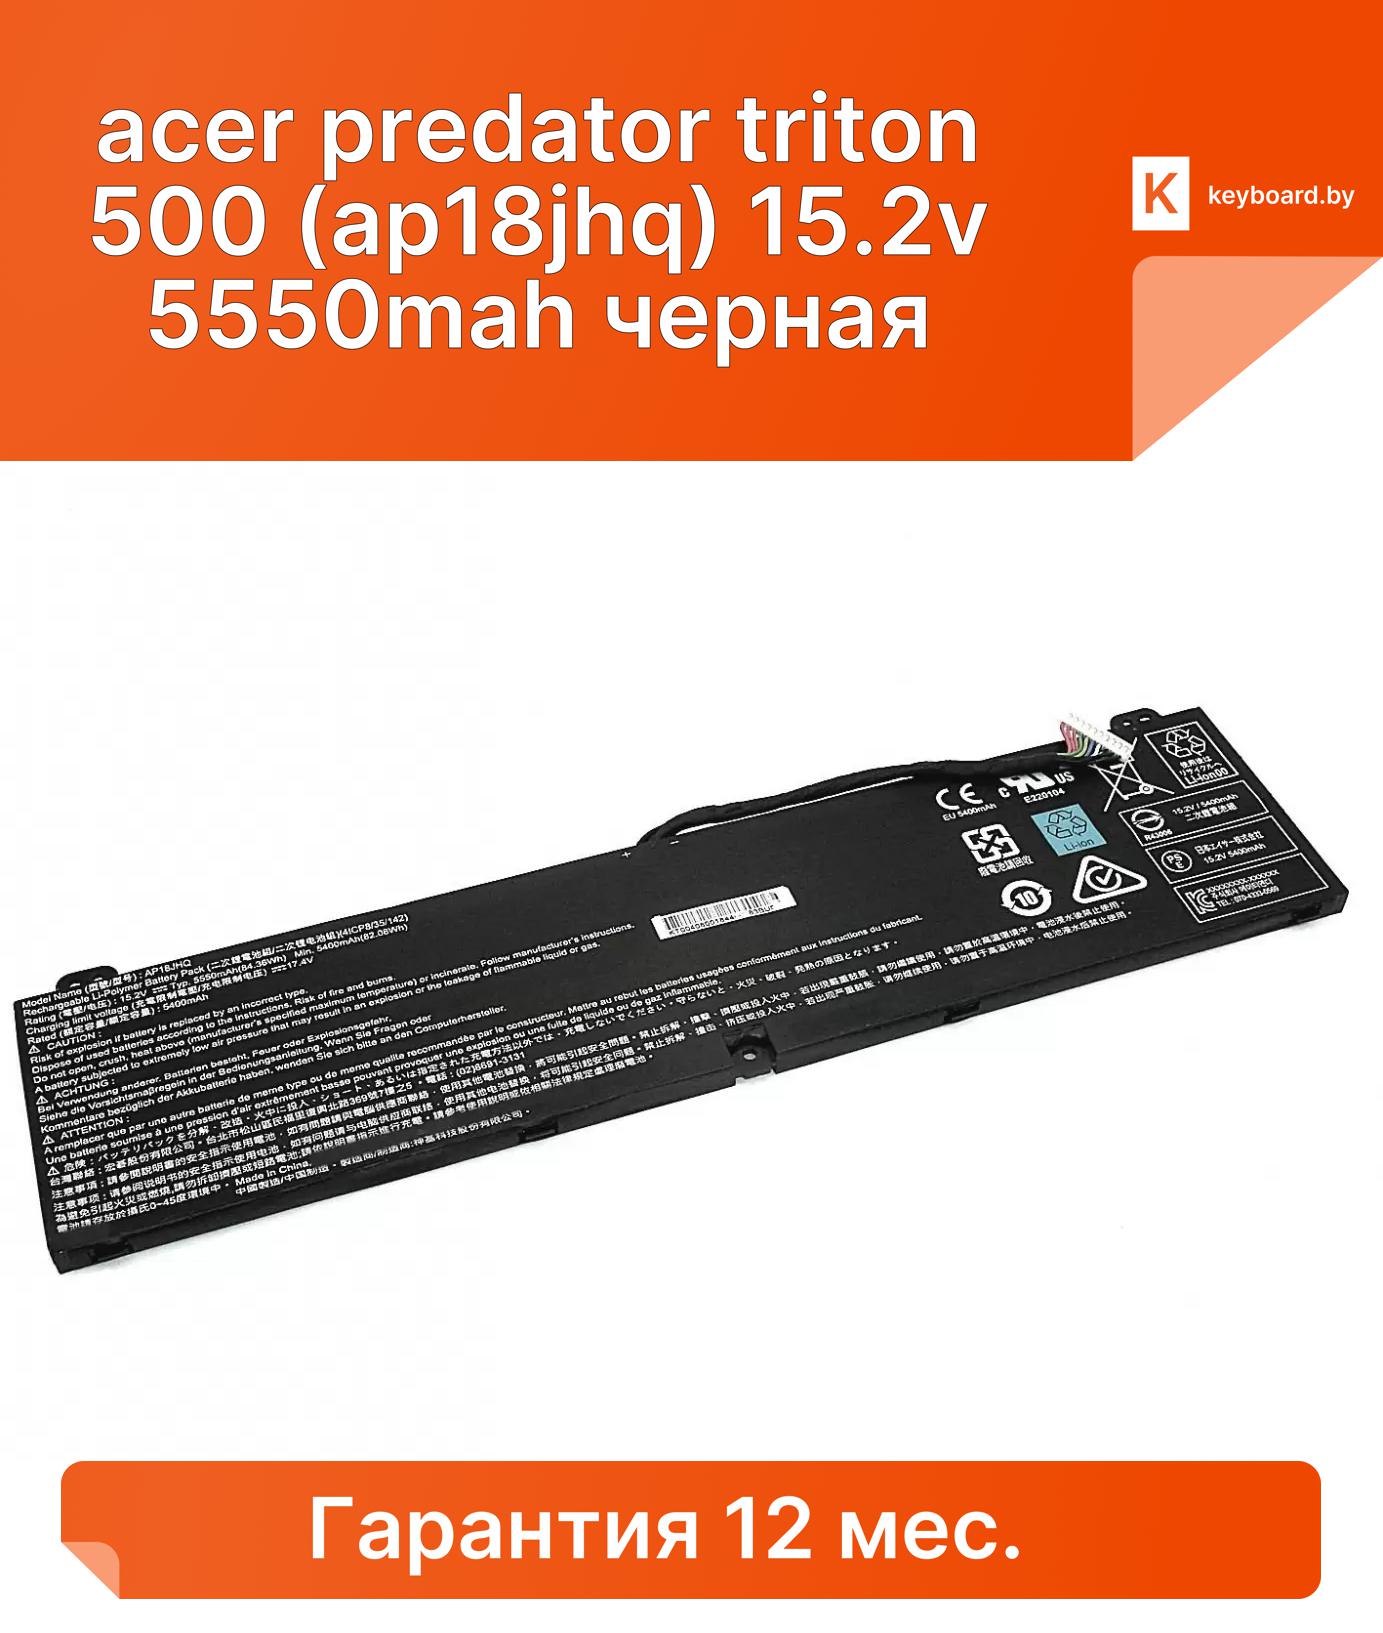 Аккумуляторная батарея для ноутбука acer predator triton 500 (ap18jhq) 15.2v 5550mah черная